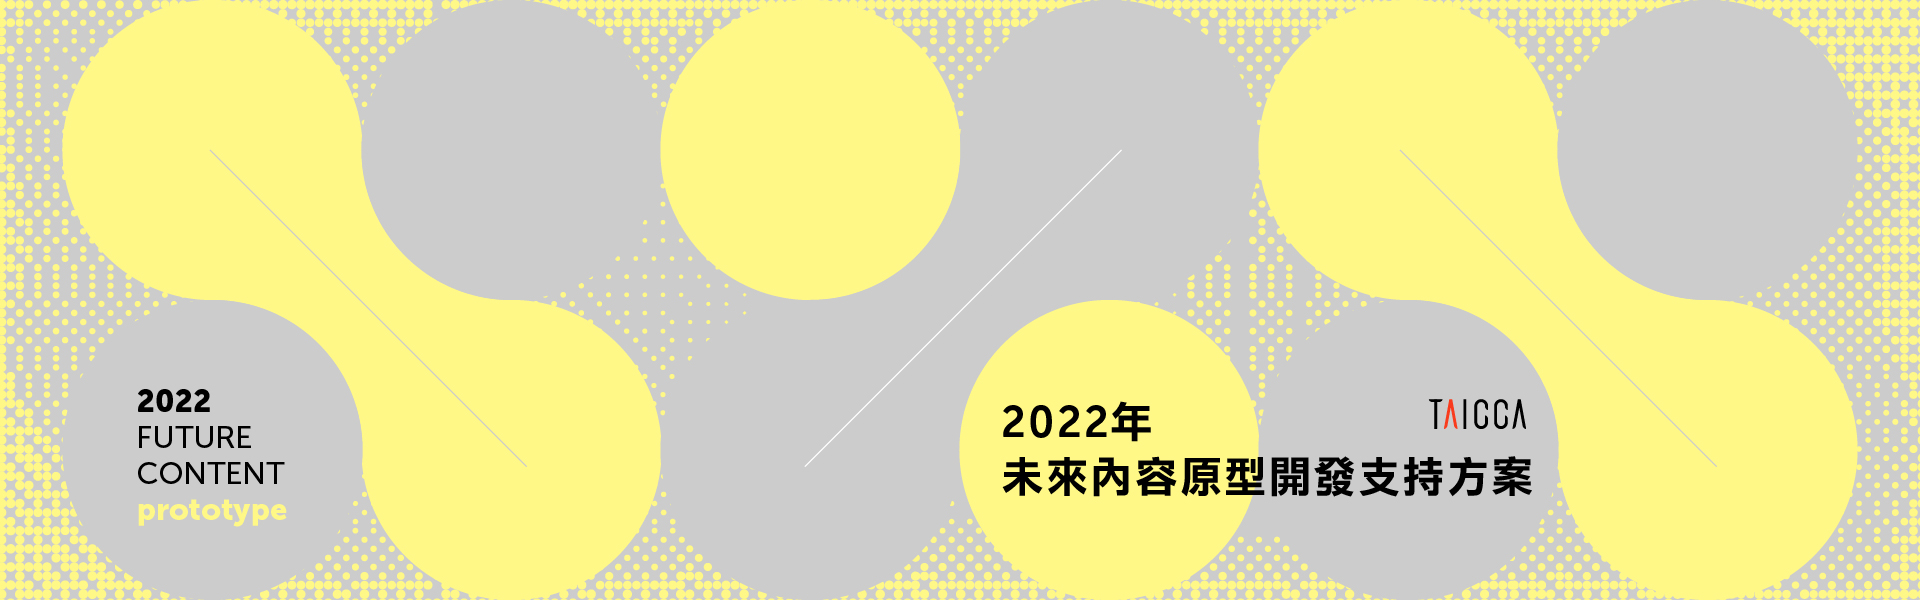 「2022年未來內容原型開發支持方案」即日起至 5月 5 日止受理收件